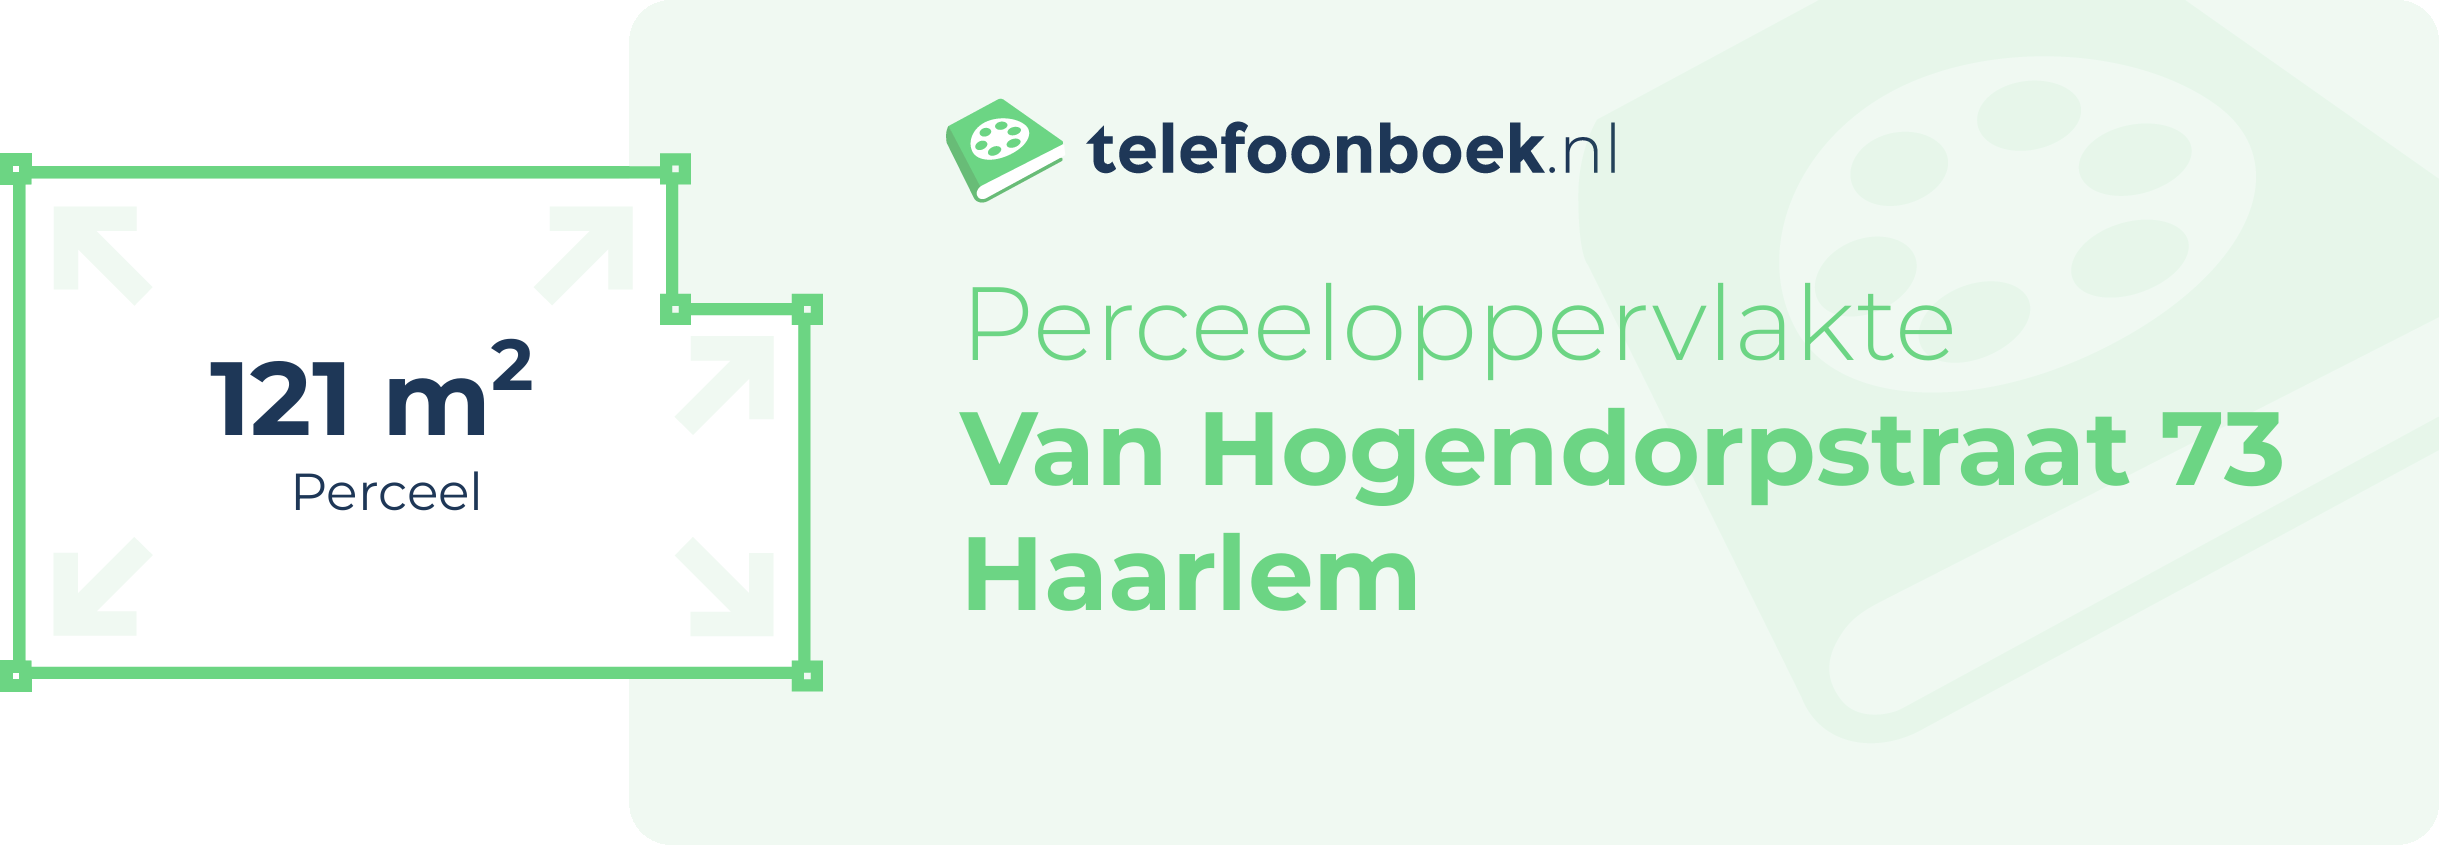 Perceeloppervlakte Van Hogendorpstraat 73 Haarlem